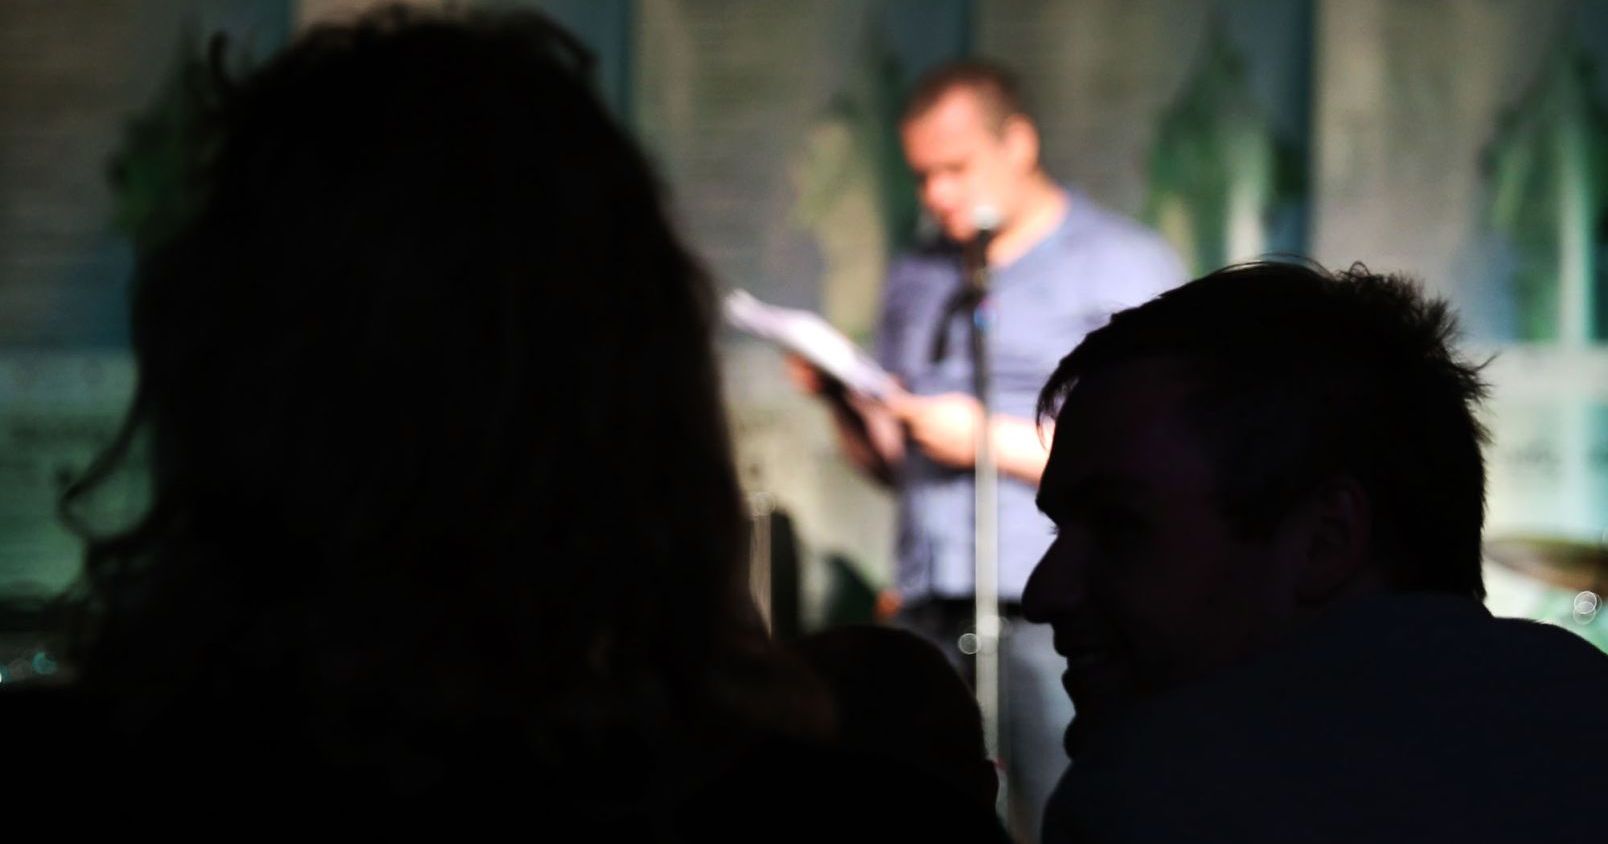  Sylwetki dwóch osób na tle sceny w Od Nowie, na której poeta prezentuje swoje wiersze